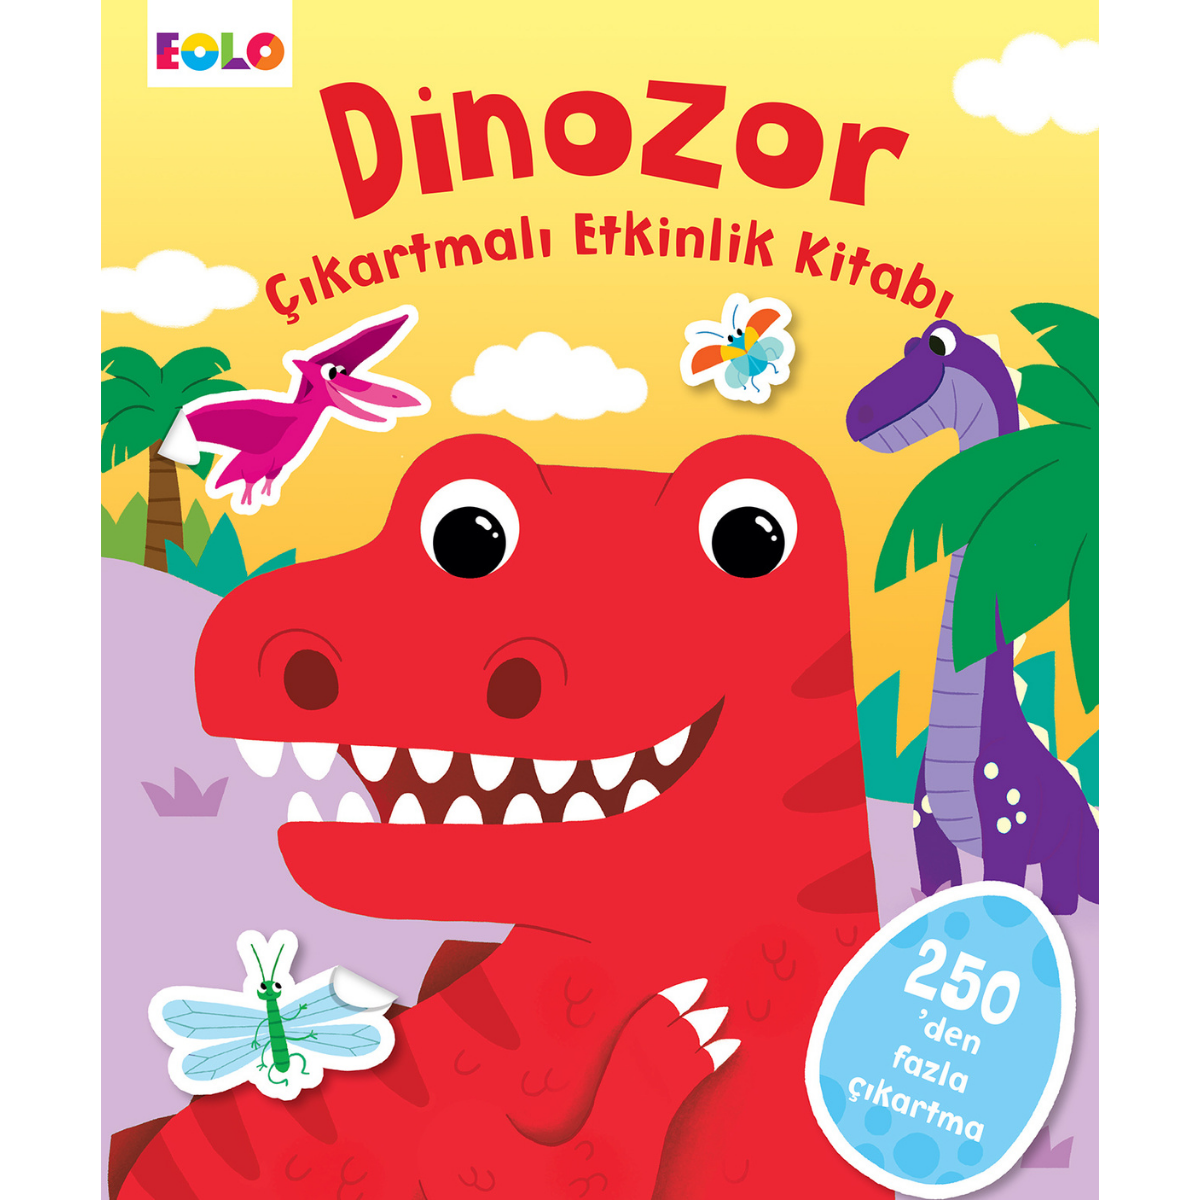 Dinosaur Sticker Activity Book